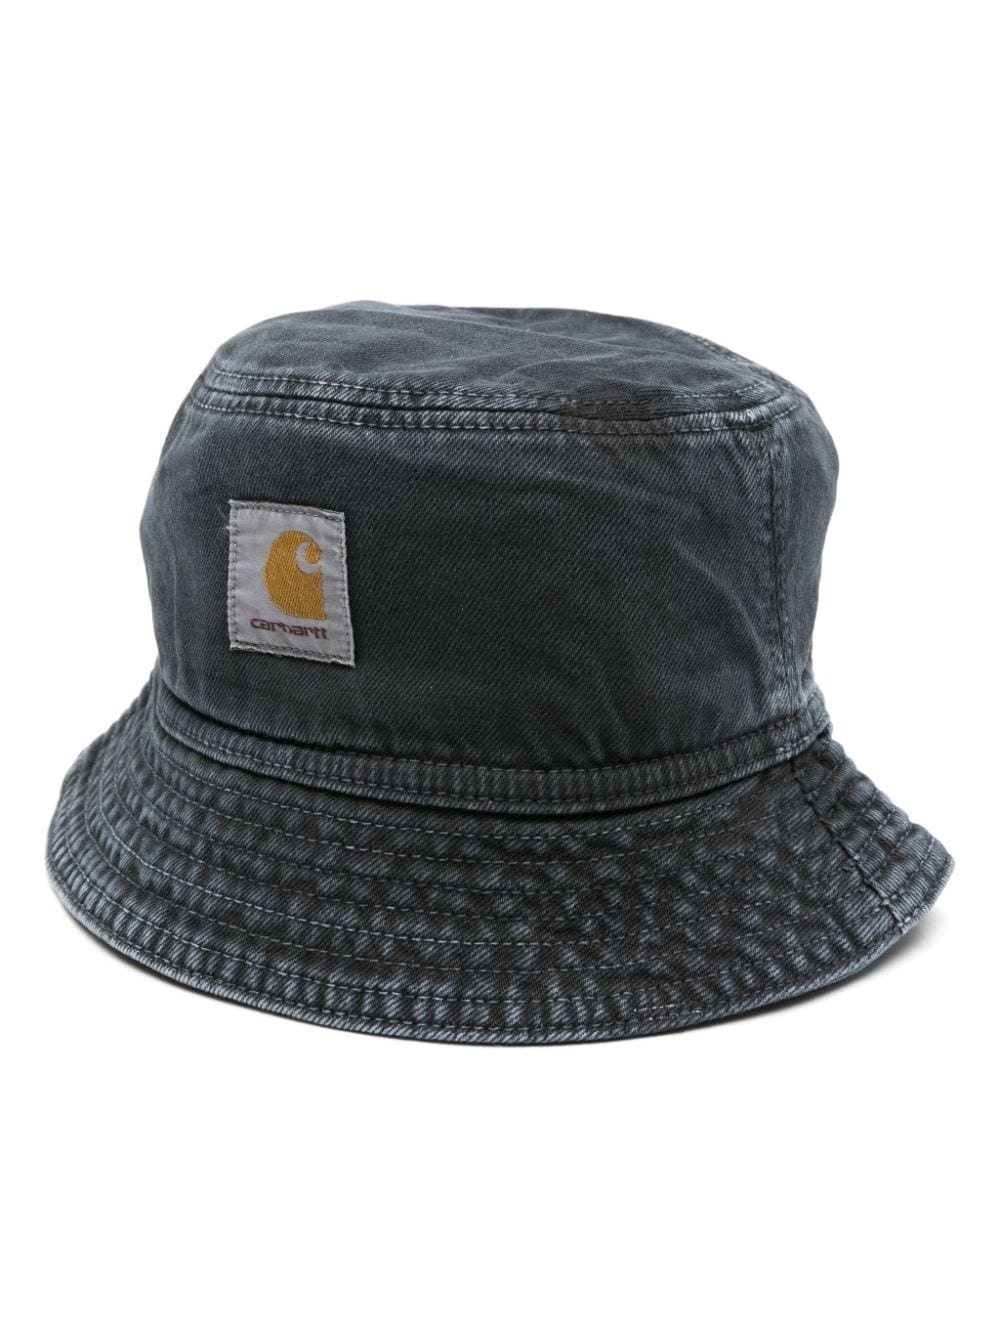 Garrison cotton bucket hat - 1